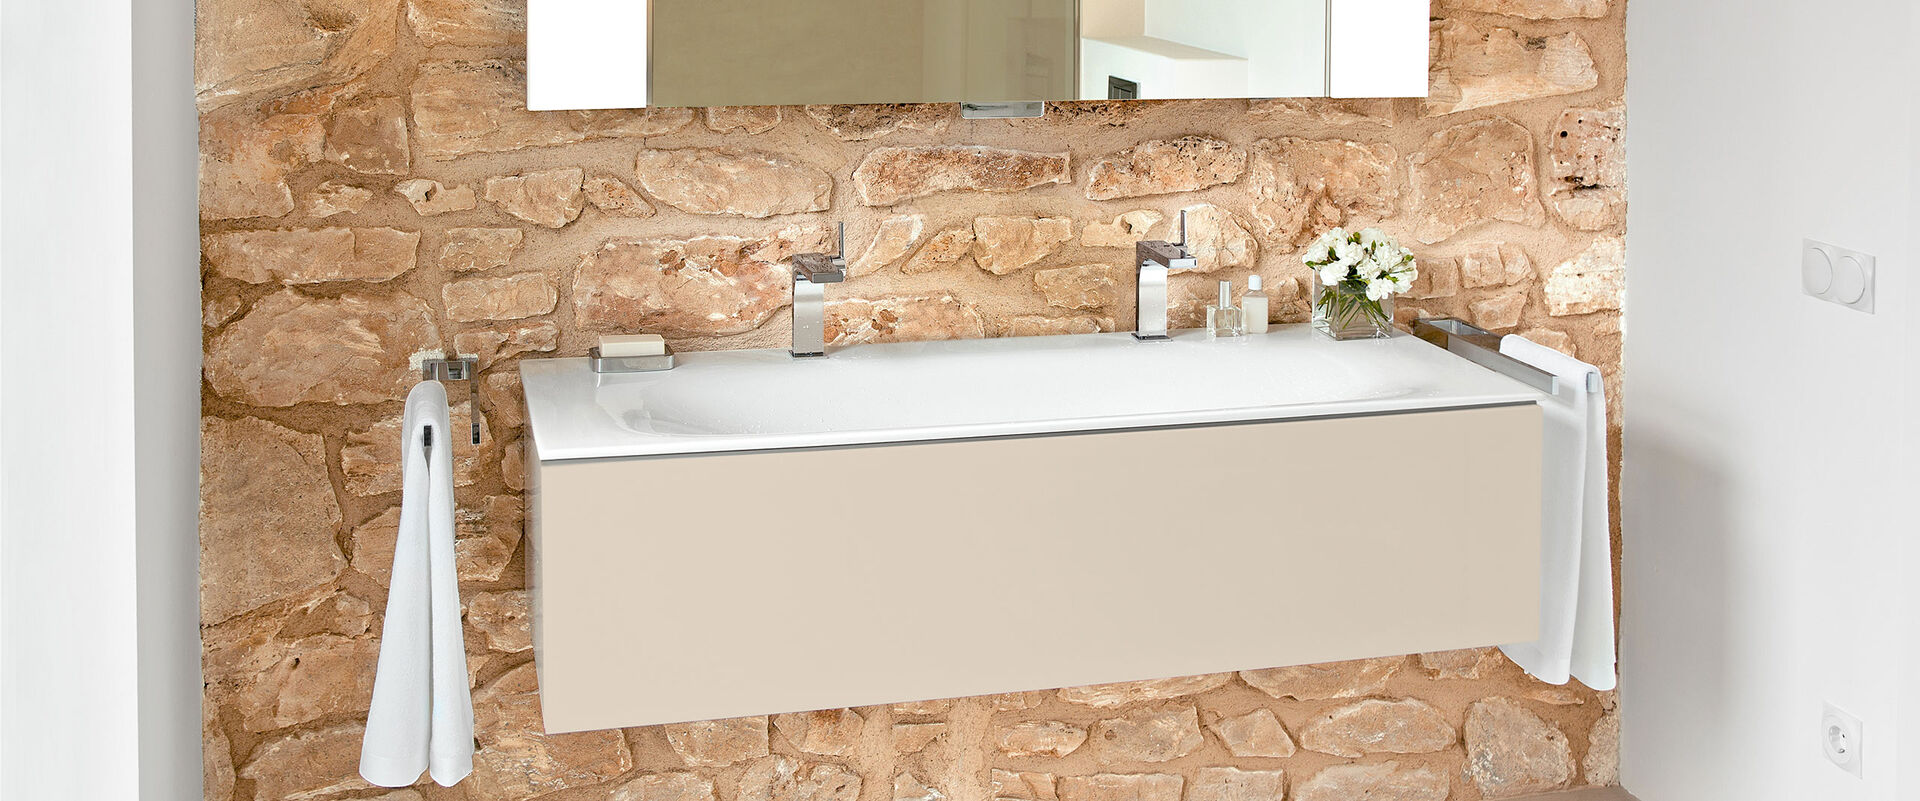 Waschbecken Edition 11 von Keuco, das an einer rustikal gemauerten Wand installiert ist.  Auf dem Waschbecken stehen Hygieneartikel, daneben hängen Handtücher, darüber hängt ein Spiegel.